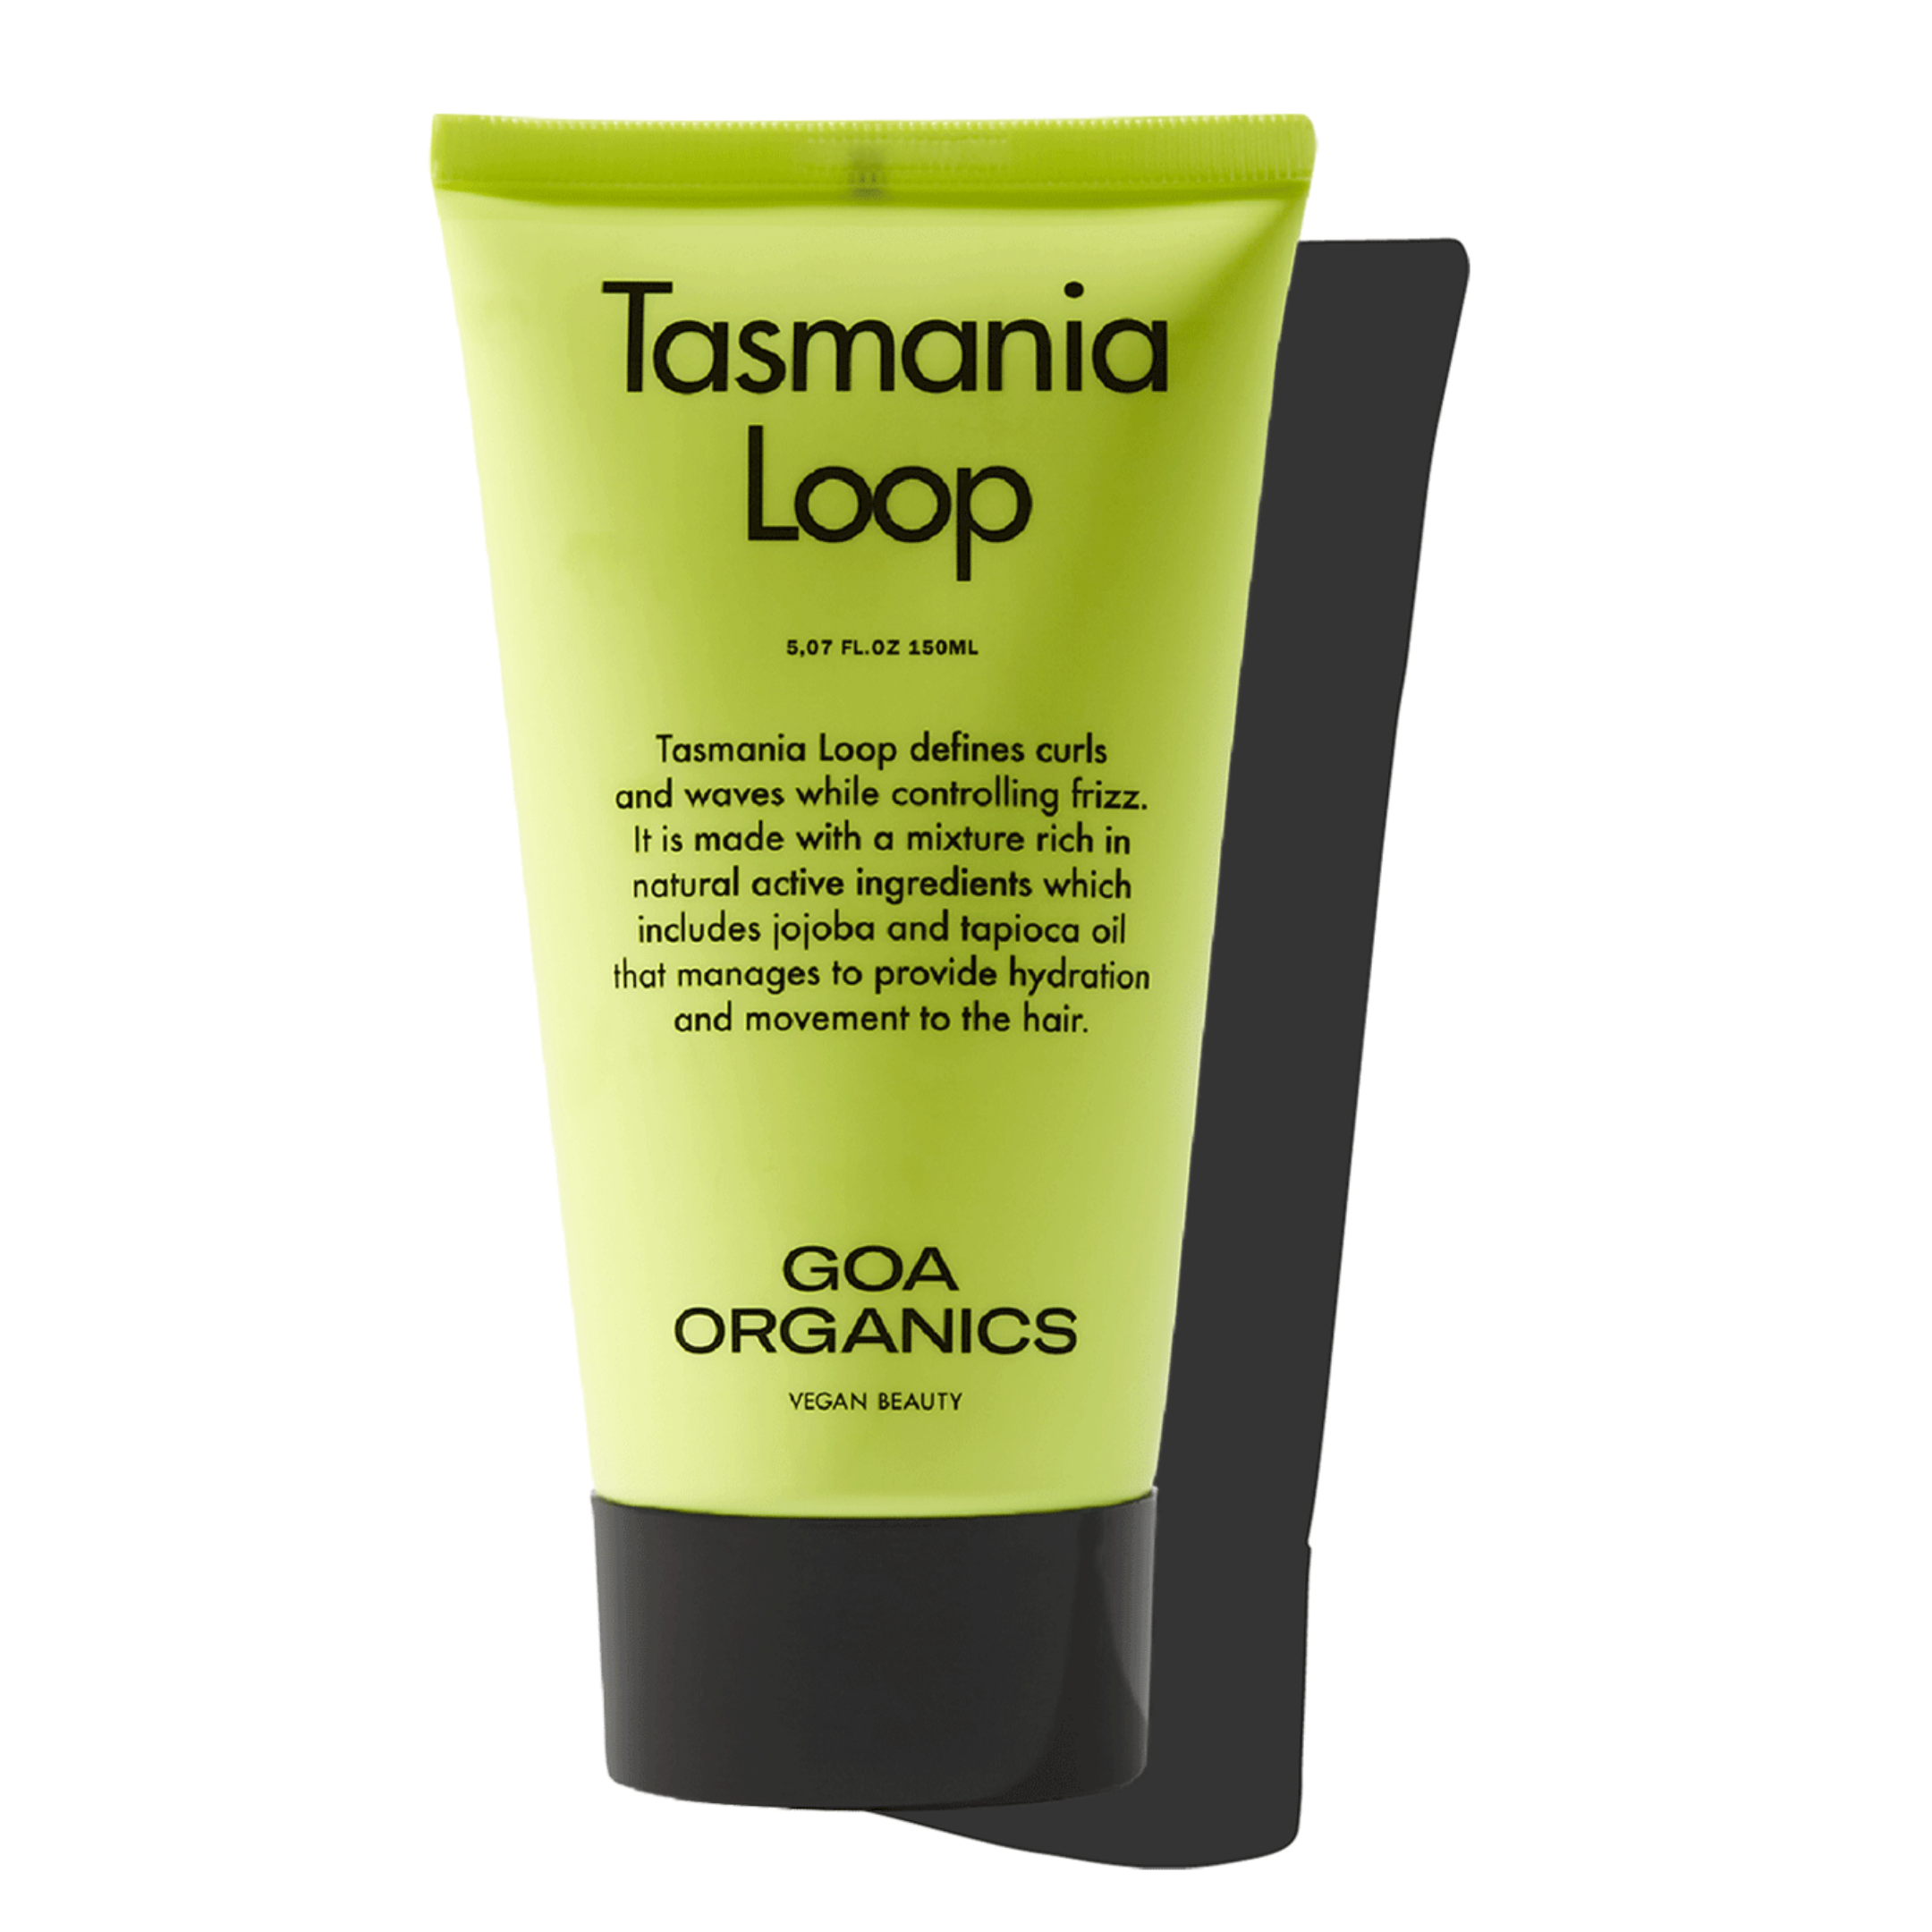 Tasmania Loop Goa Organics 150ml (de venta en el salón Compte)